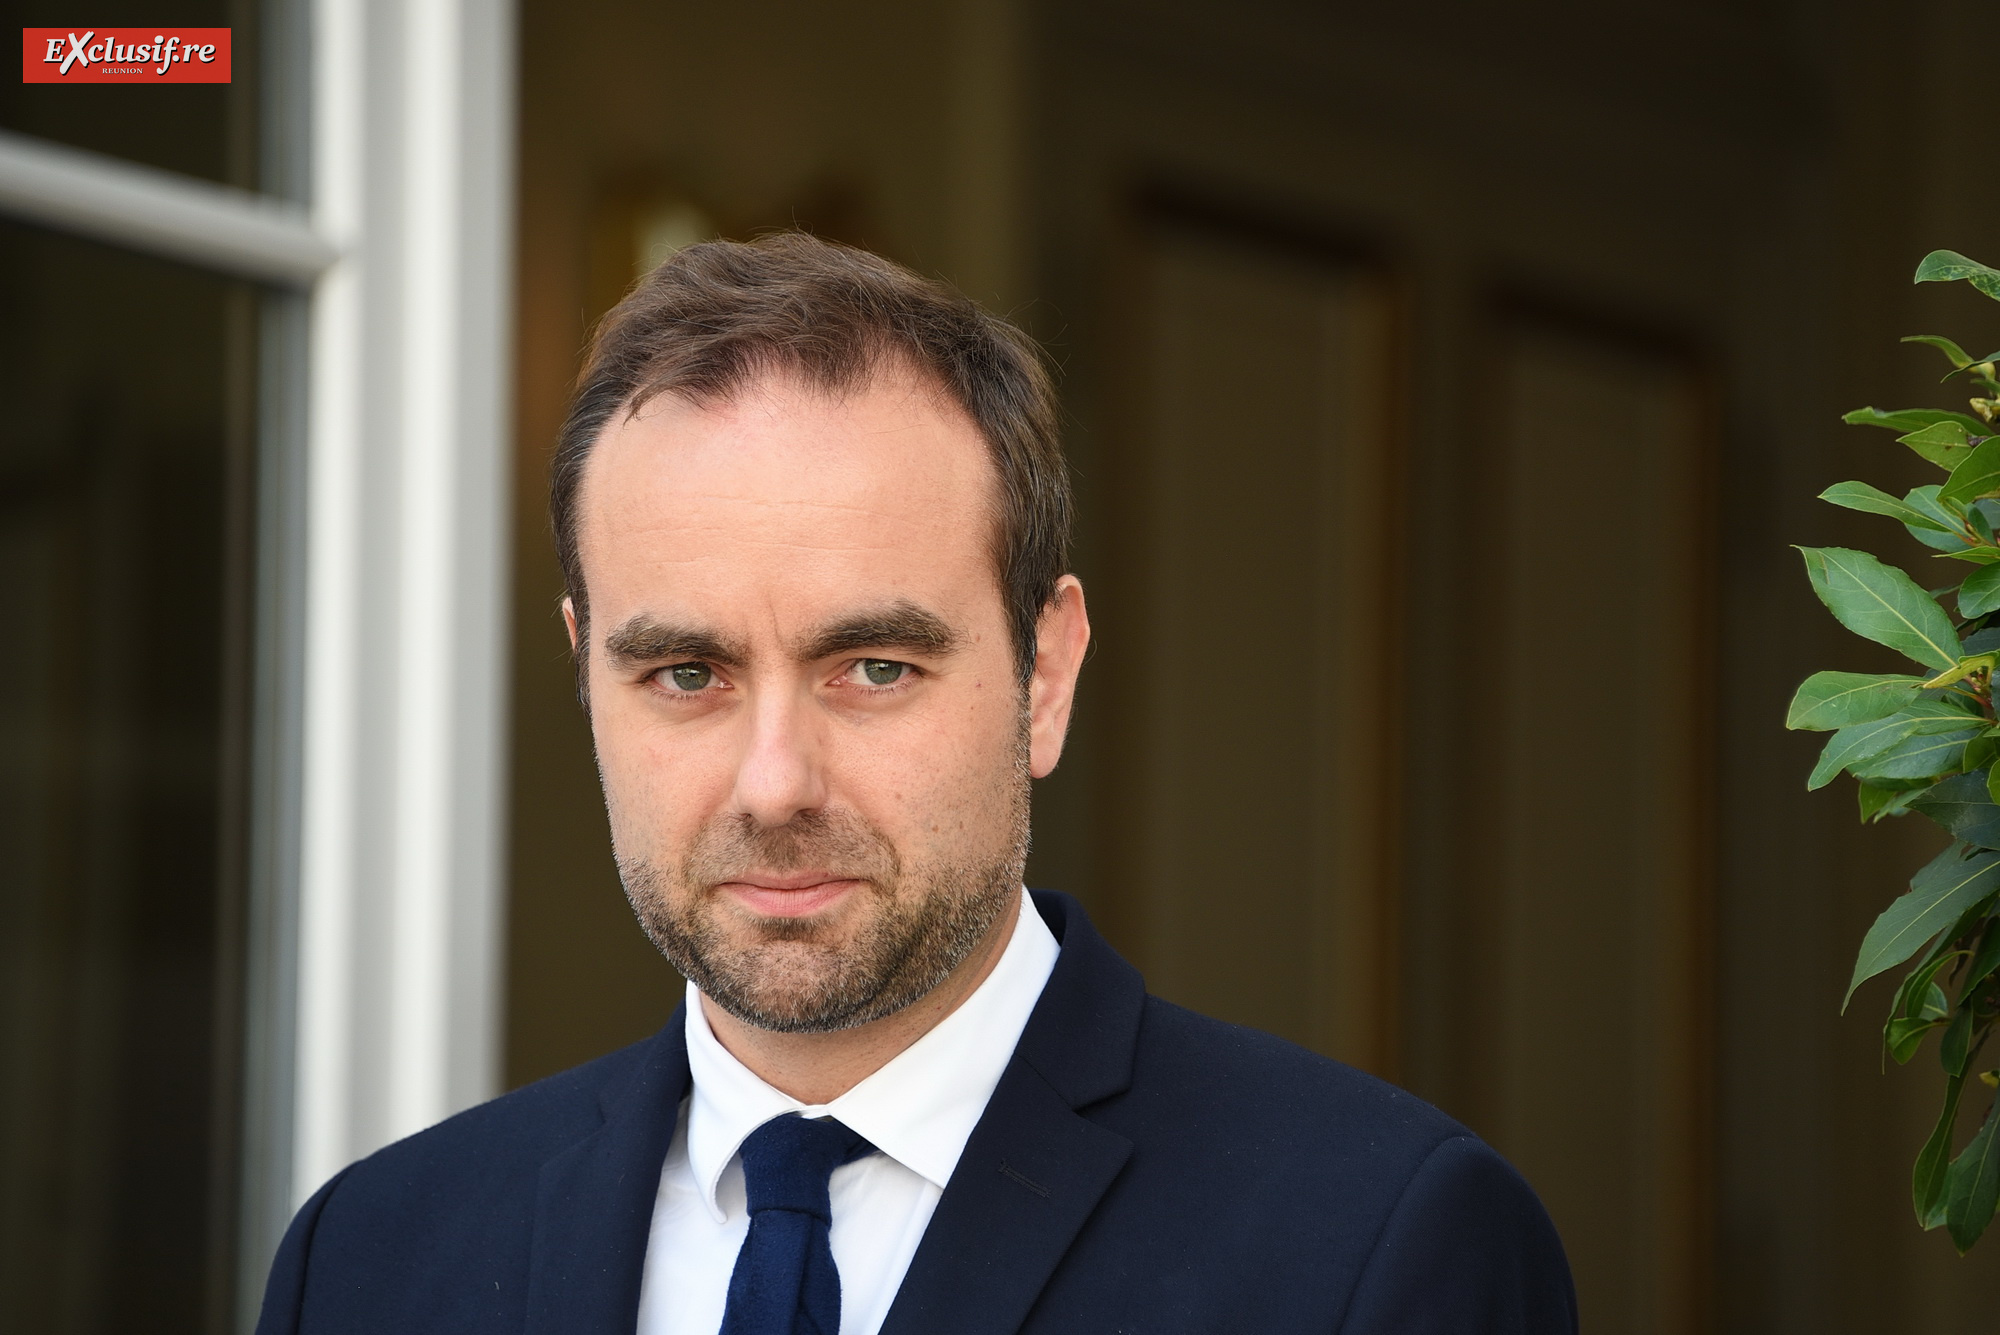 Sébastien Lecornu, 34 ans, Ministre des Outre-mer dans le gouvernement de Jean Castex, Premier ministre